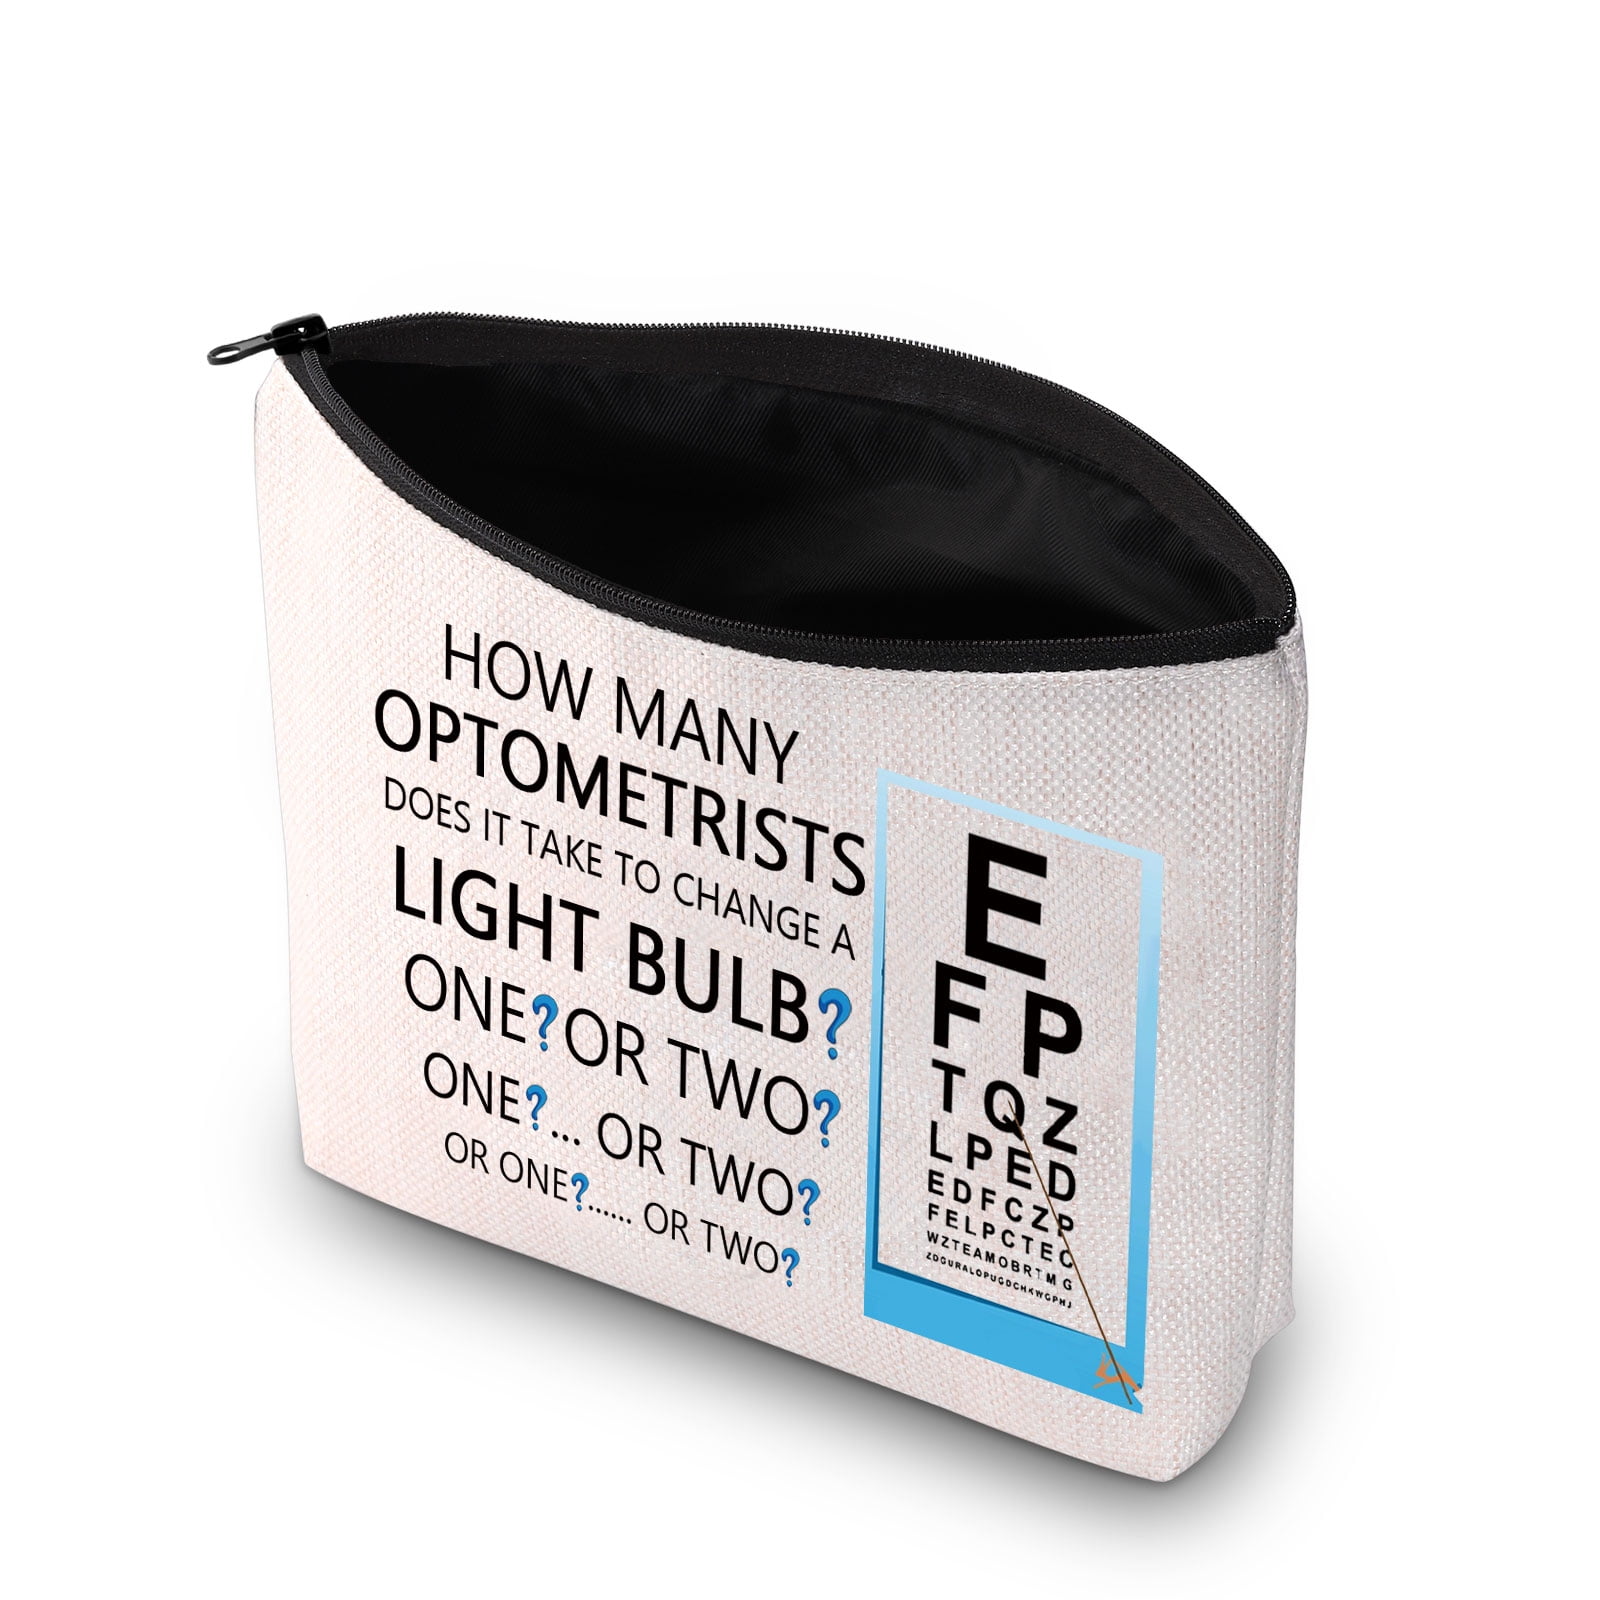 Optometrist Stay Glassy Zipper Cosmetic Bag East Urban Home